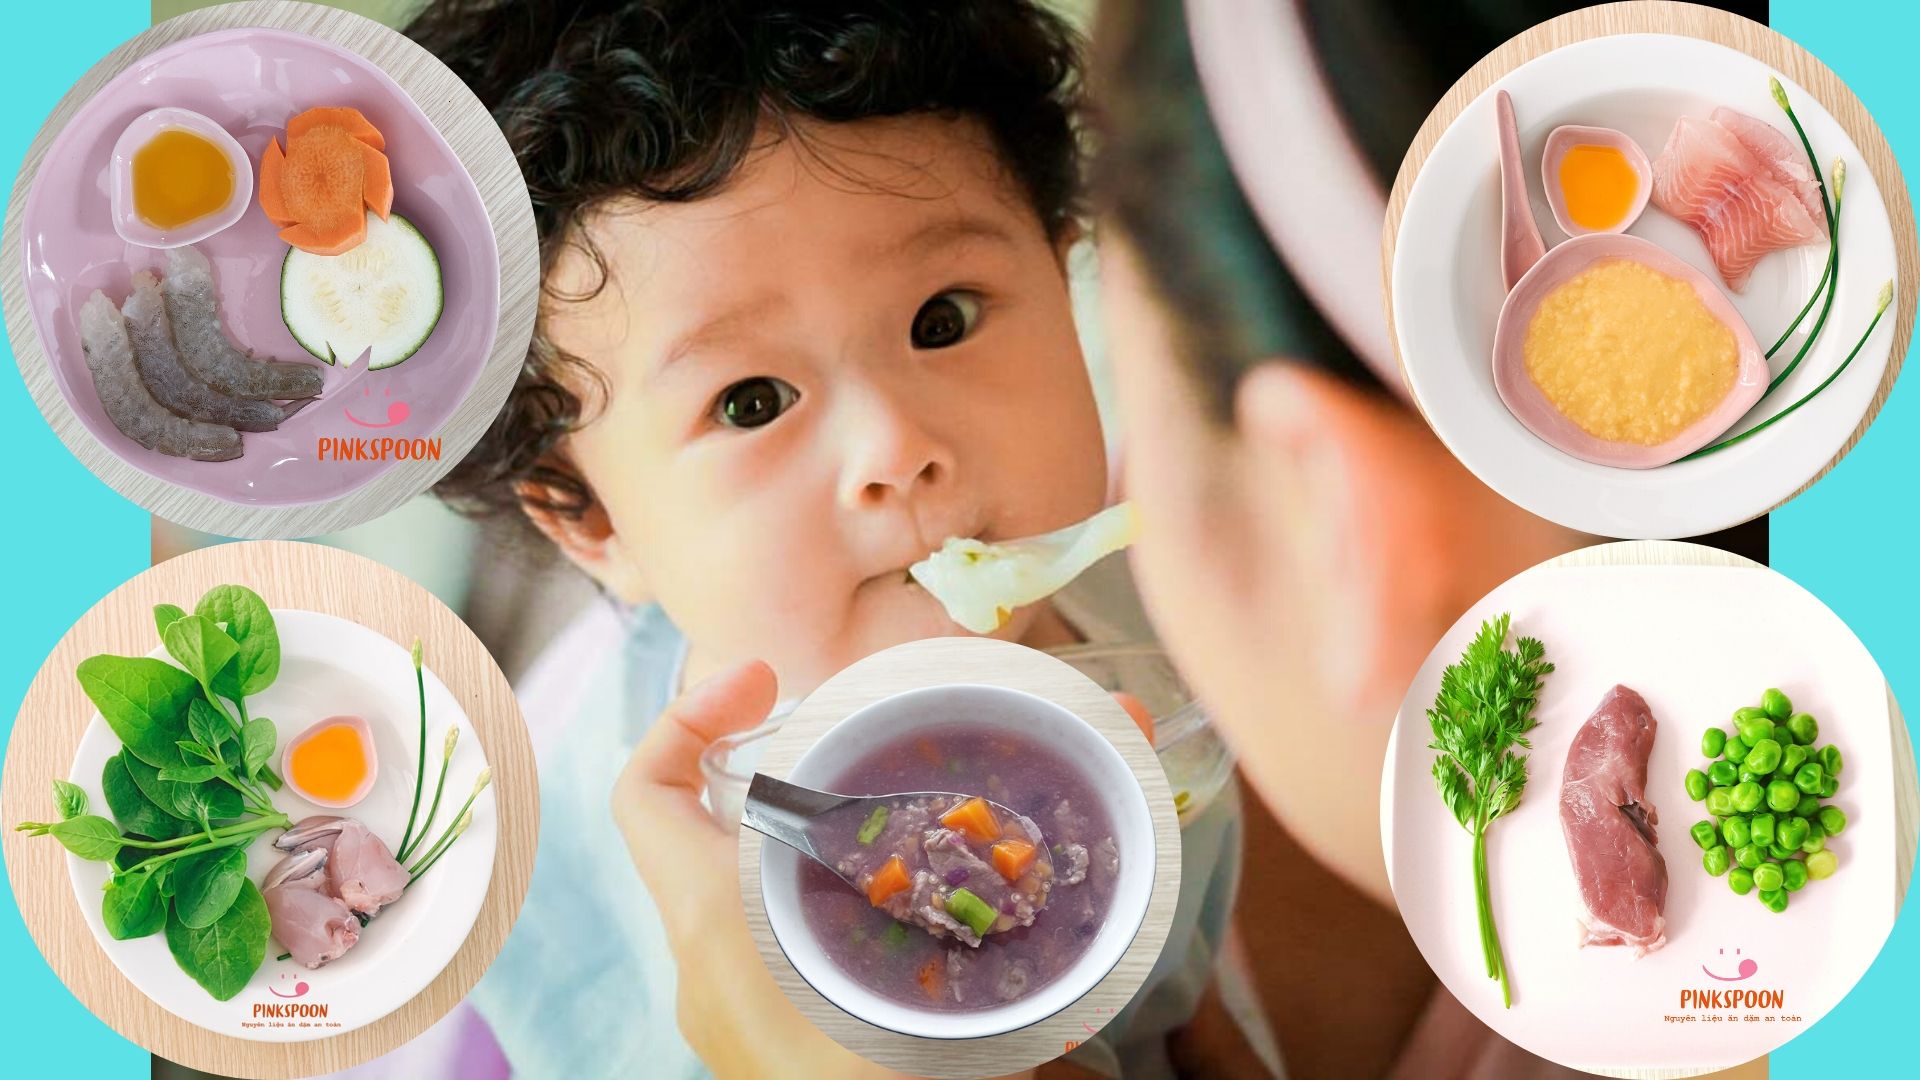 Chế biến món ăn cho bé 2 tuổi cần lưu ý những gì